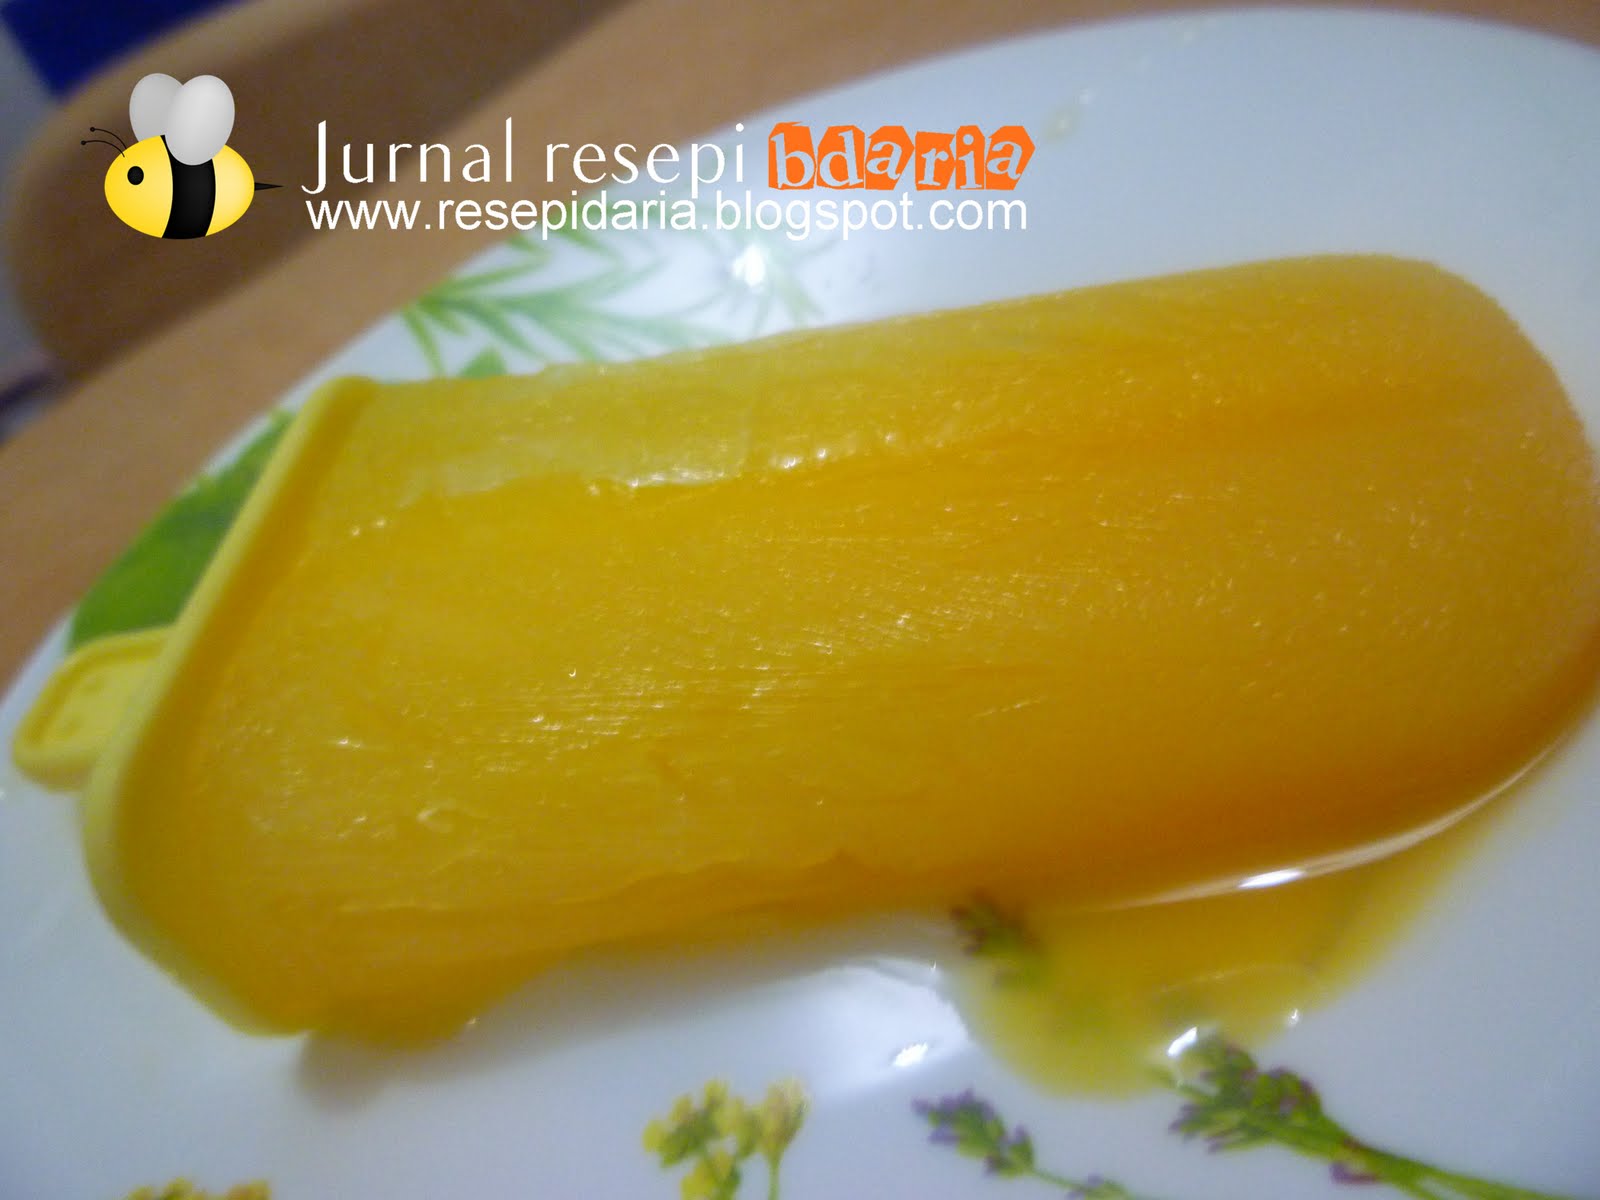 Jurnal resepi bdaria: Roti Jala kuah durian